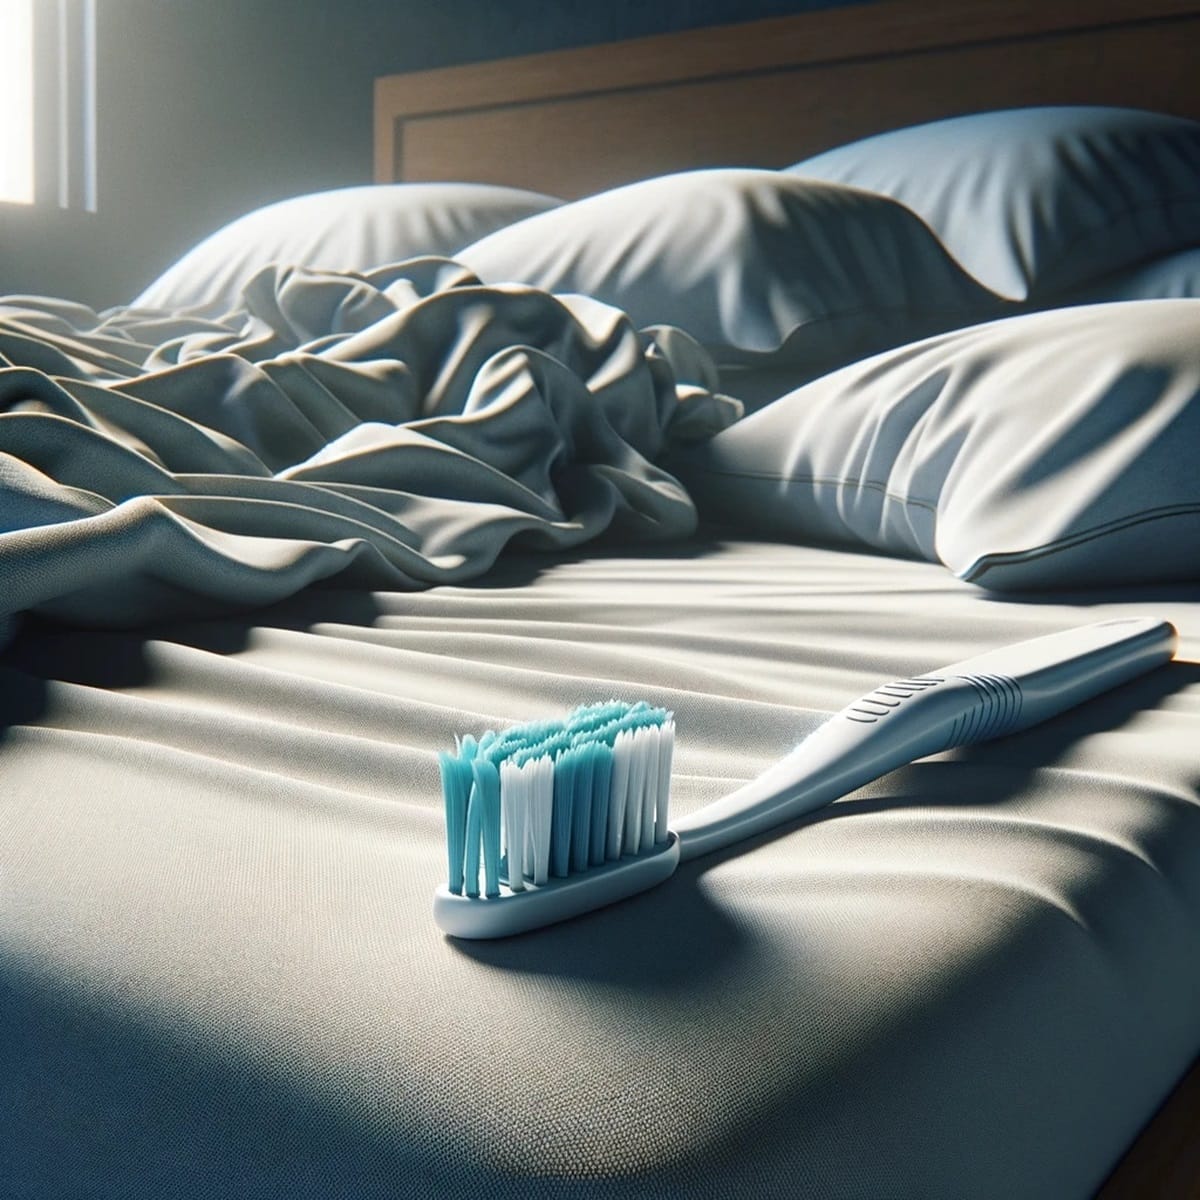 Imagen referencial de un cepillo de dientes